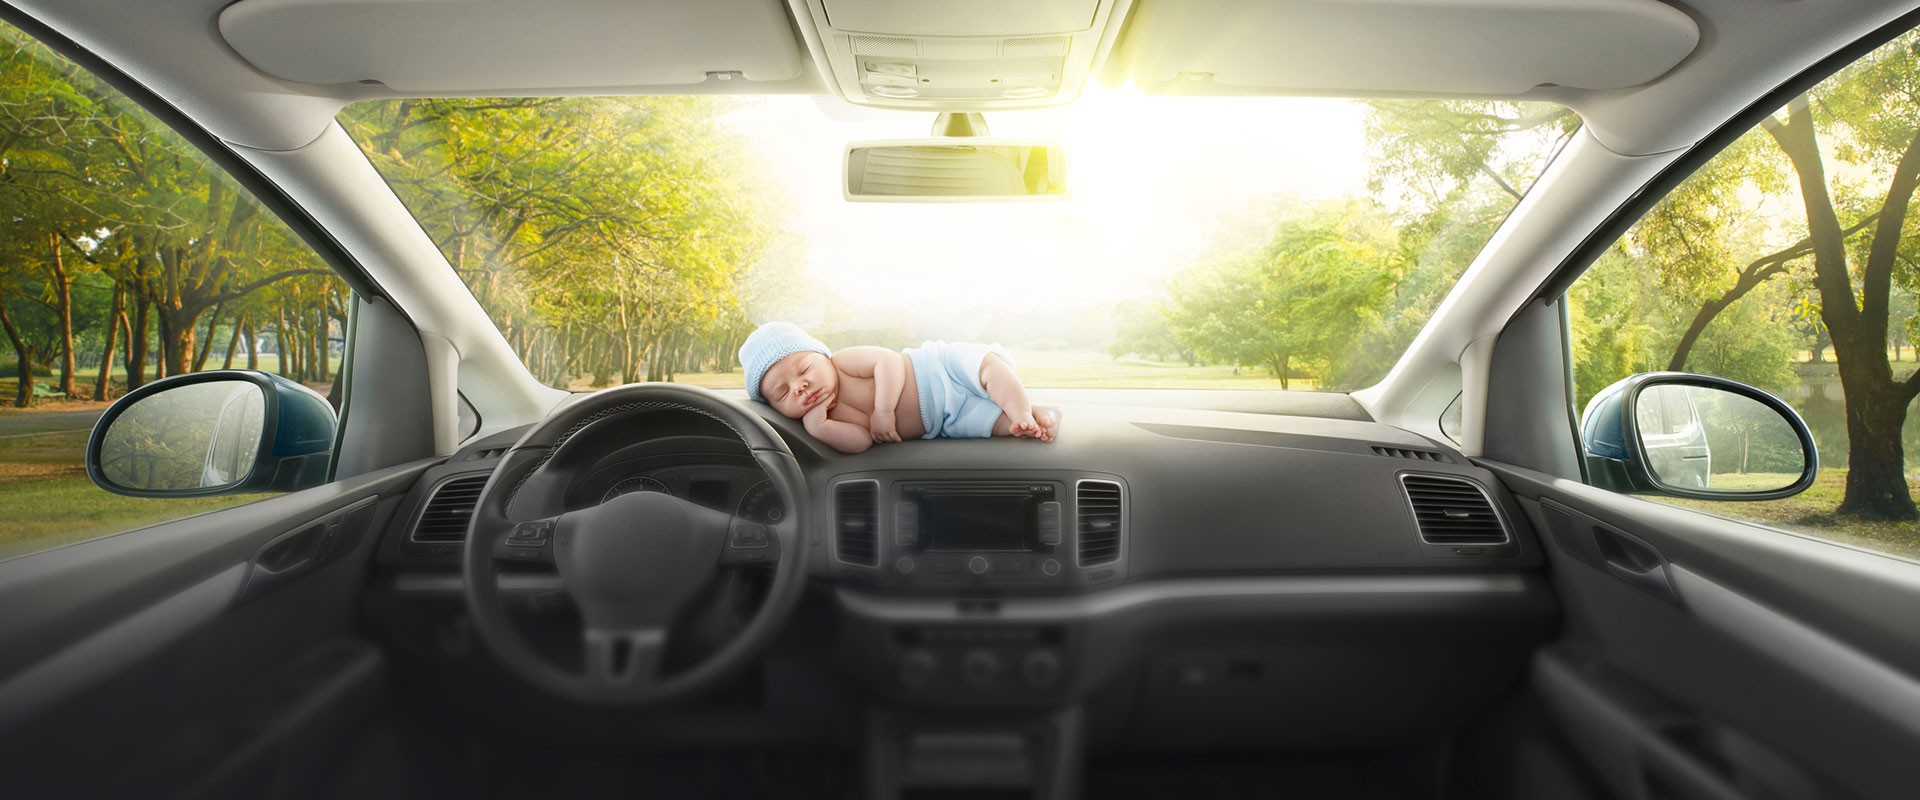 Schlafendes Baby liegt in stehendem Auto auf Armaturenbrett